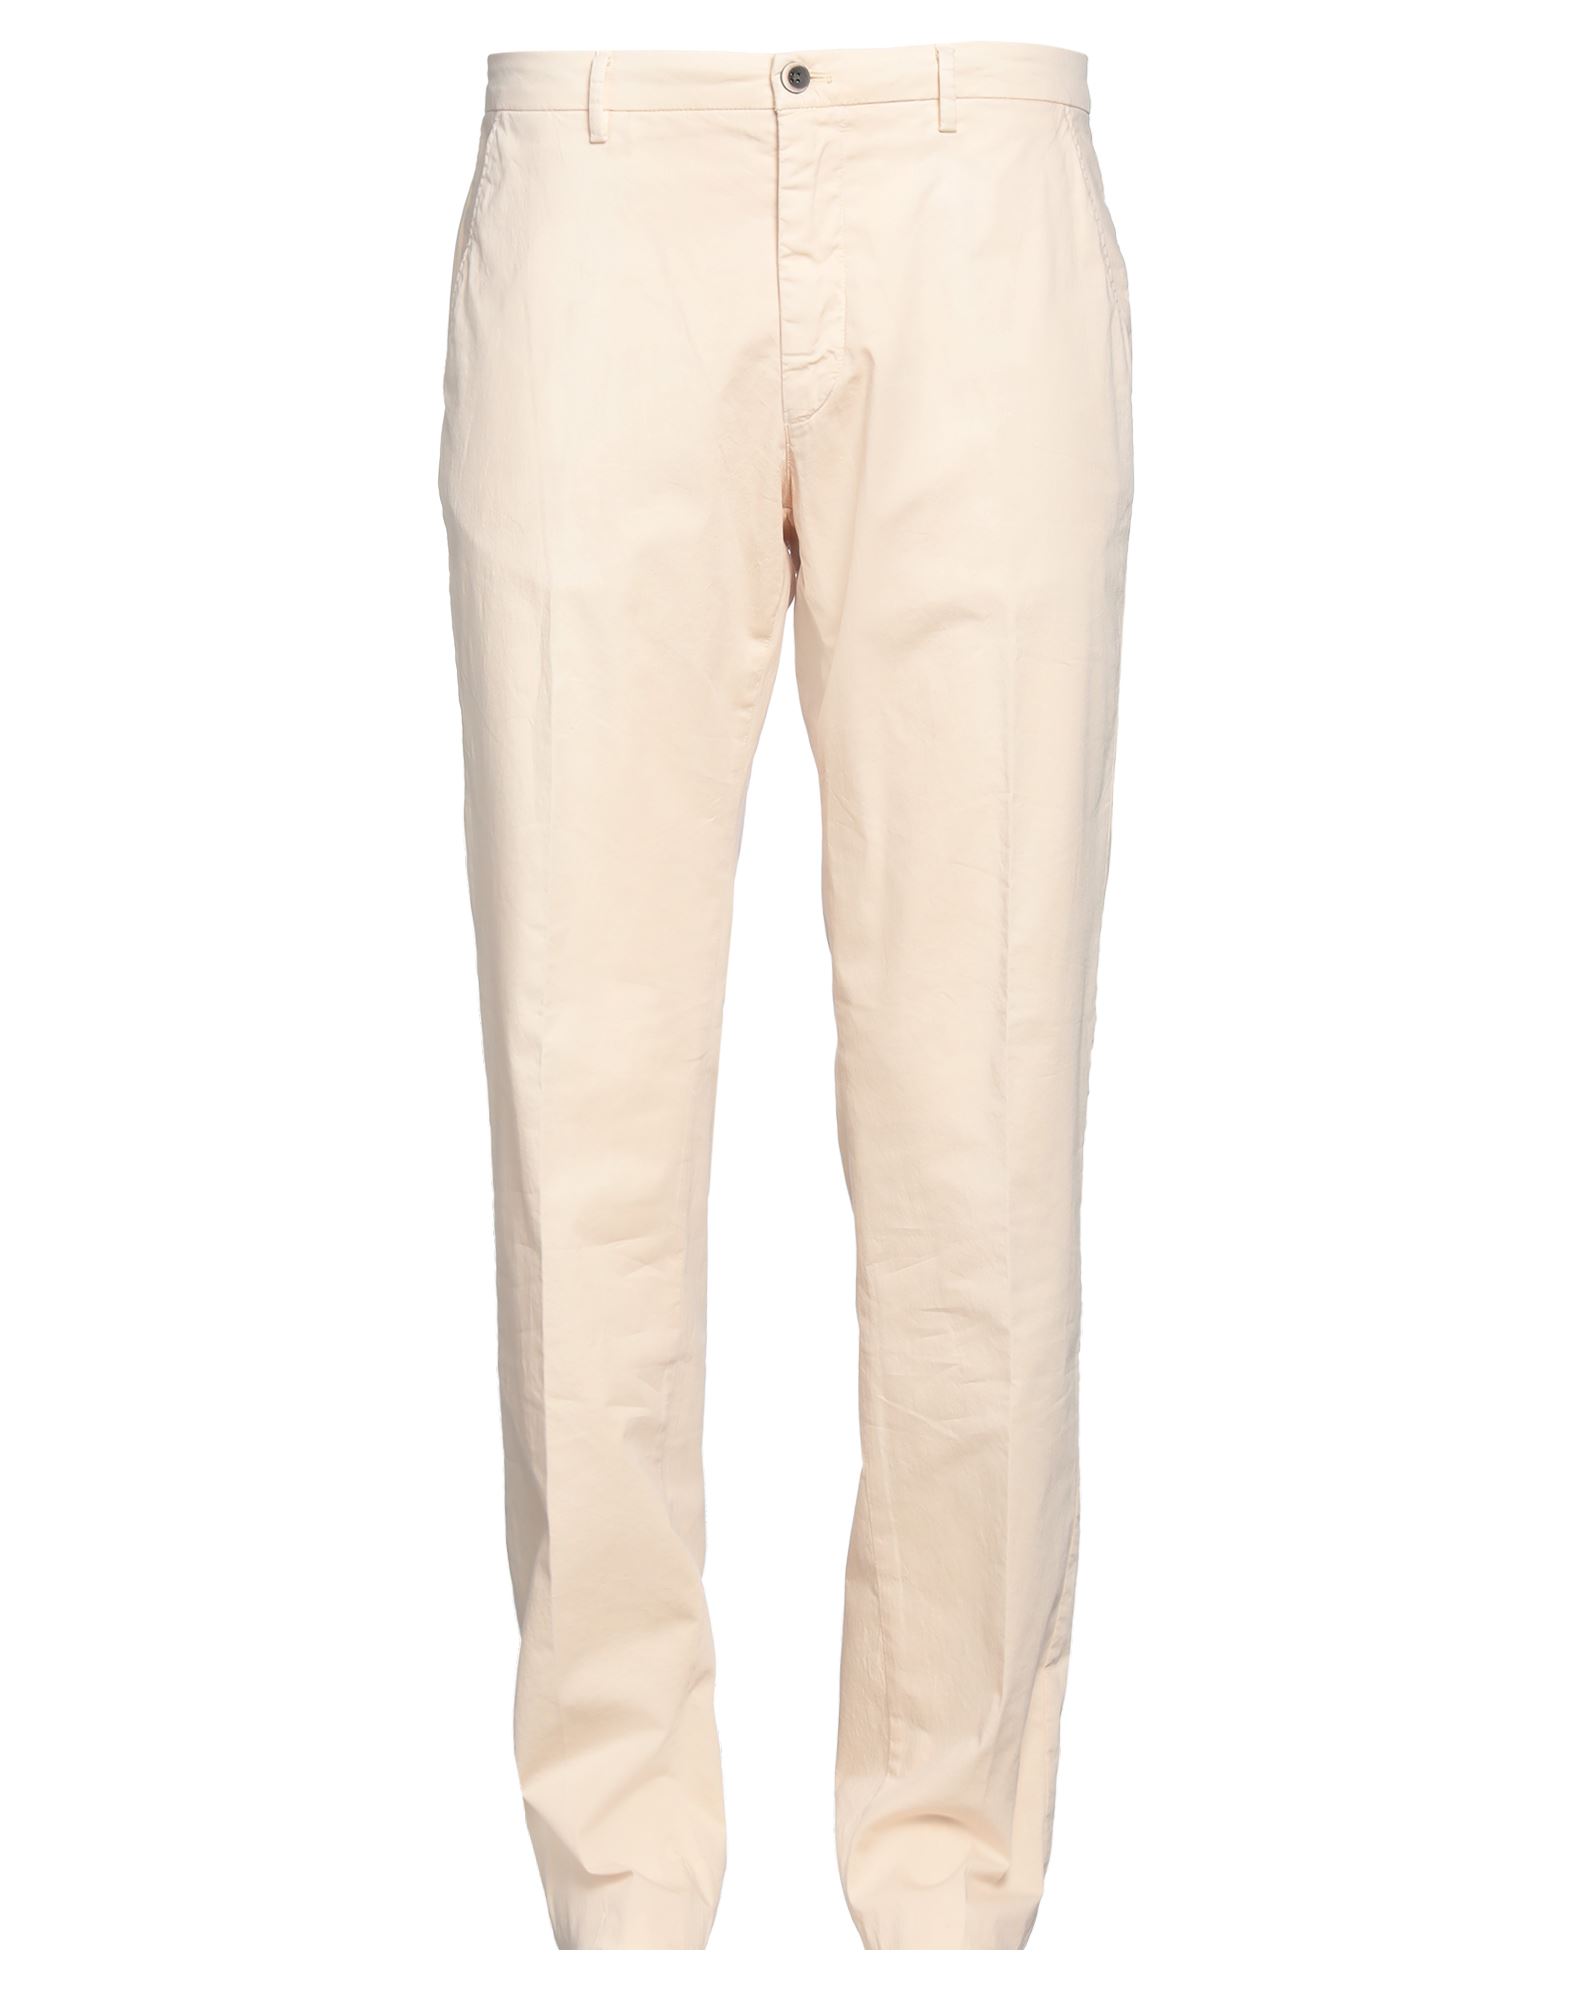 Mason's Man Pants Cream Size 42 Cotton, Elastane In White